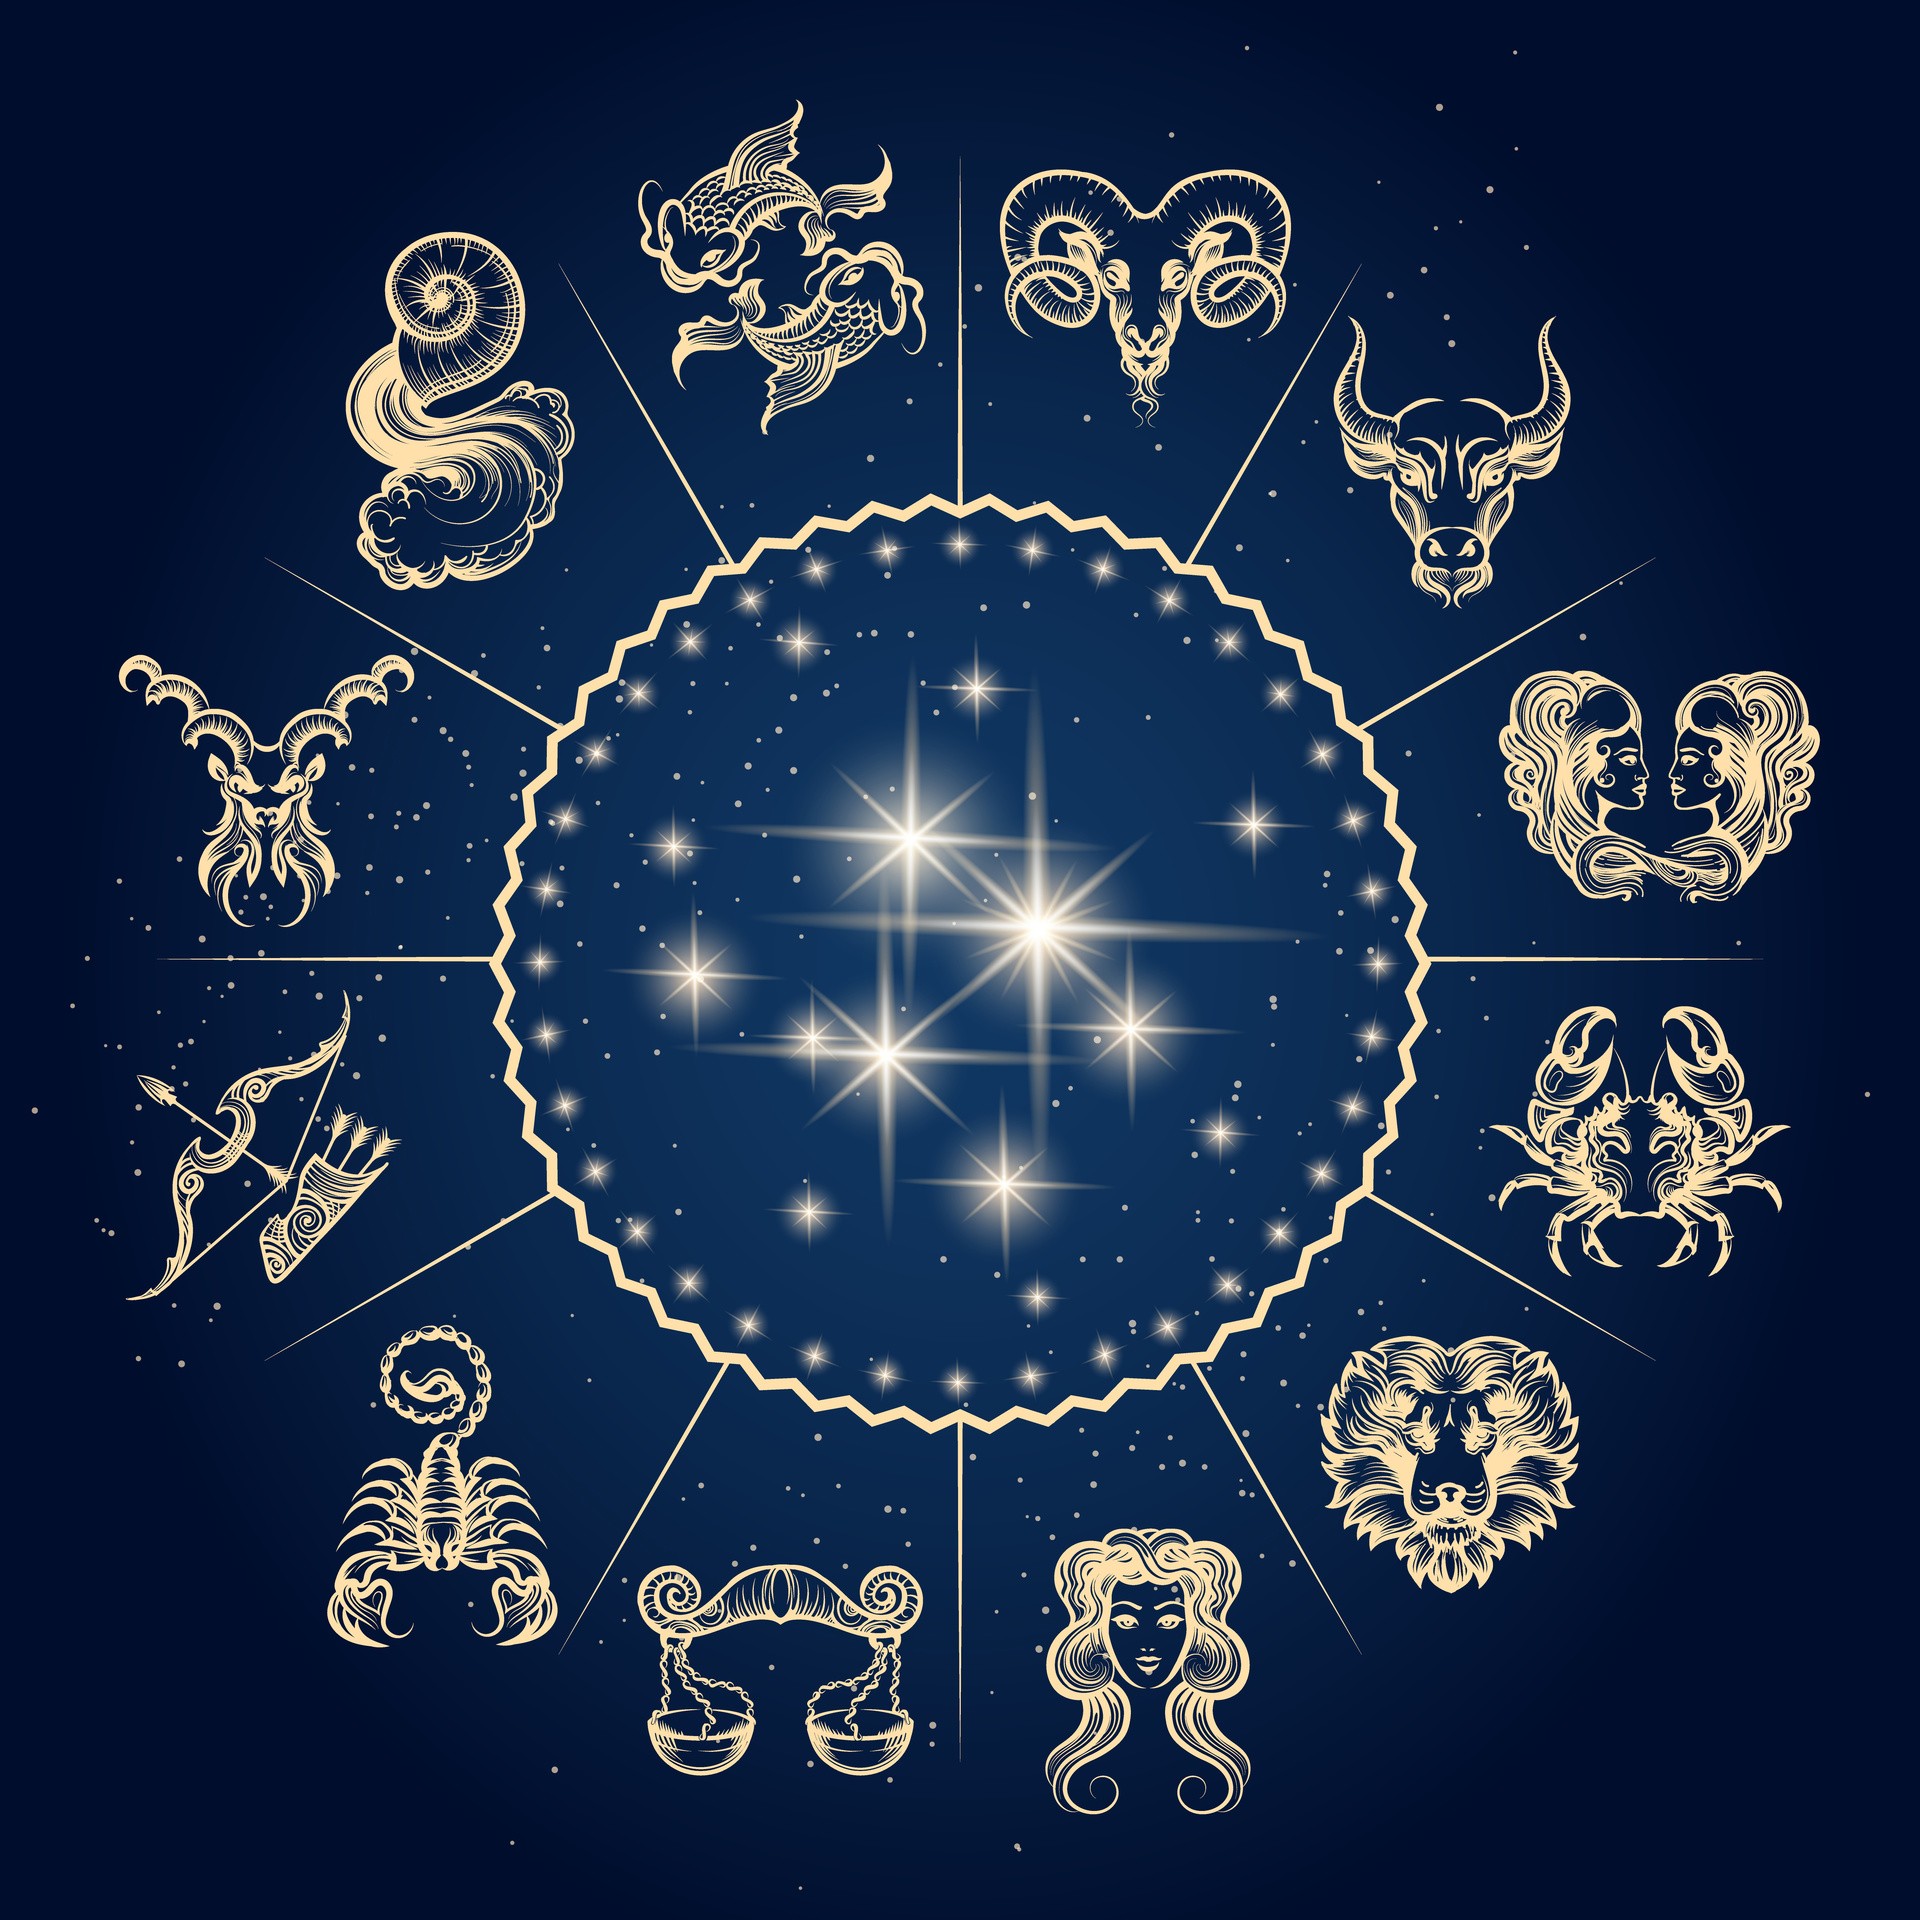 Horoskop Miesi czny Na Wrzesie 2020 Te Znaki Zodiaku Odkryj Pasje I 